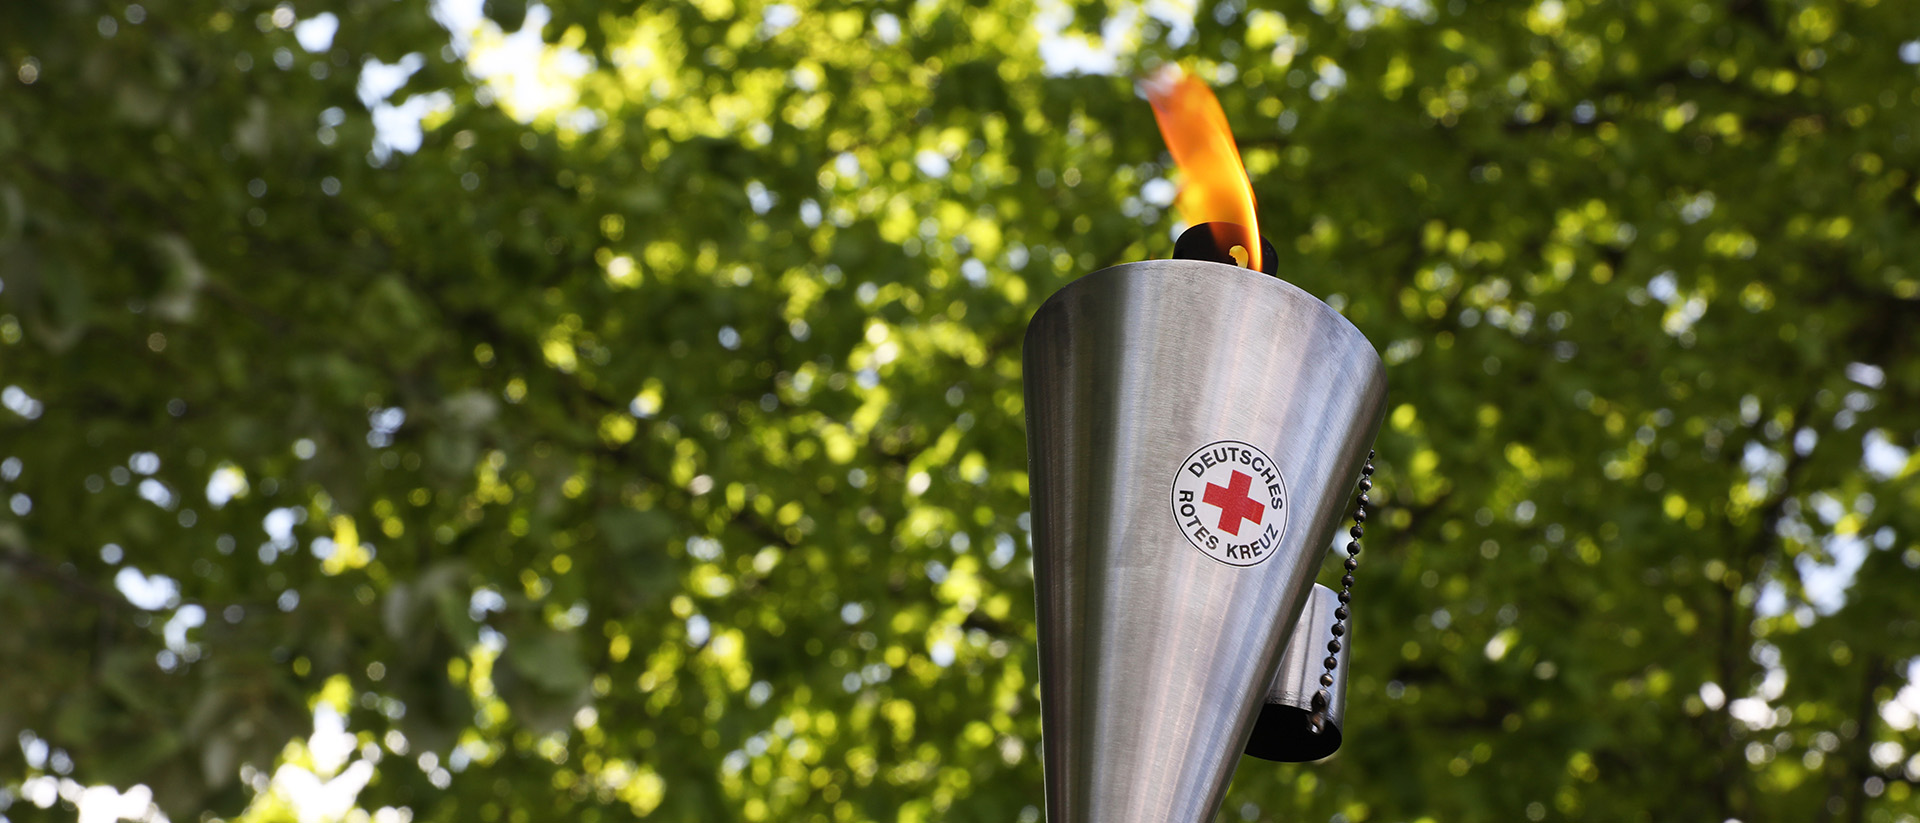 Eine brennende Fackel aus Edelstahl mit dem Logo des Deutschen Roten Kreuzes. Im Hintergrund sind grüne Baumkronen zu sehen.